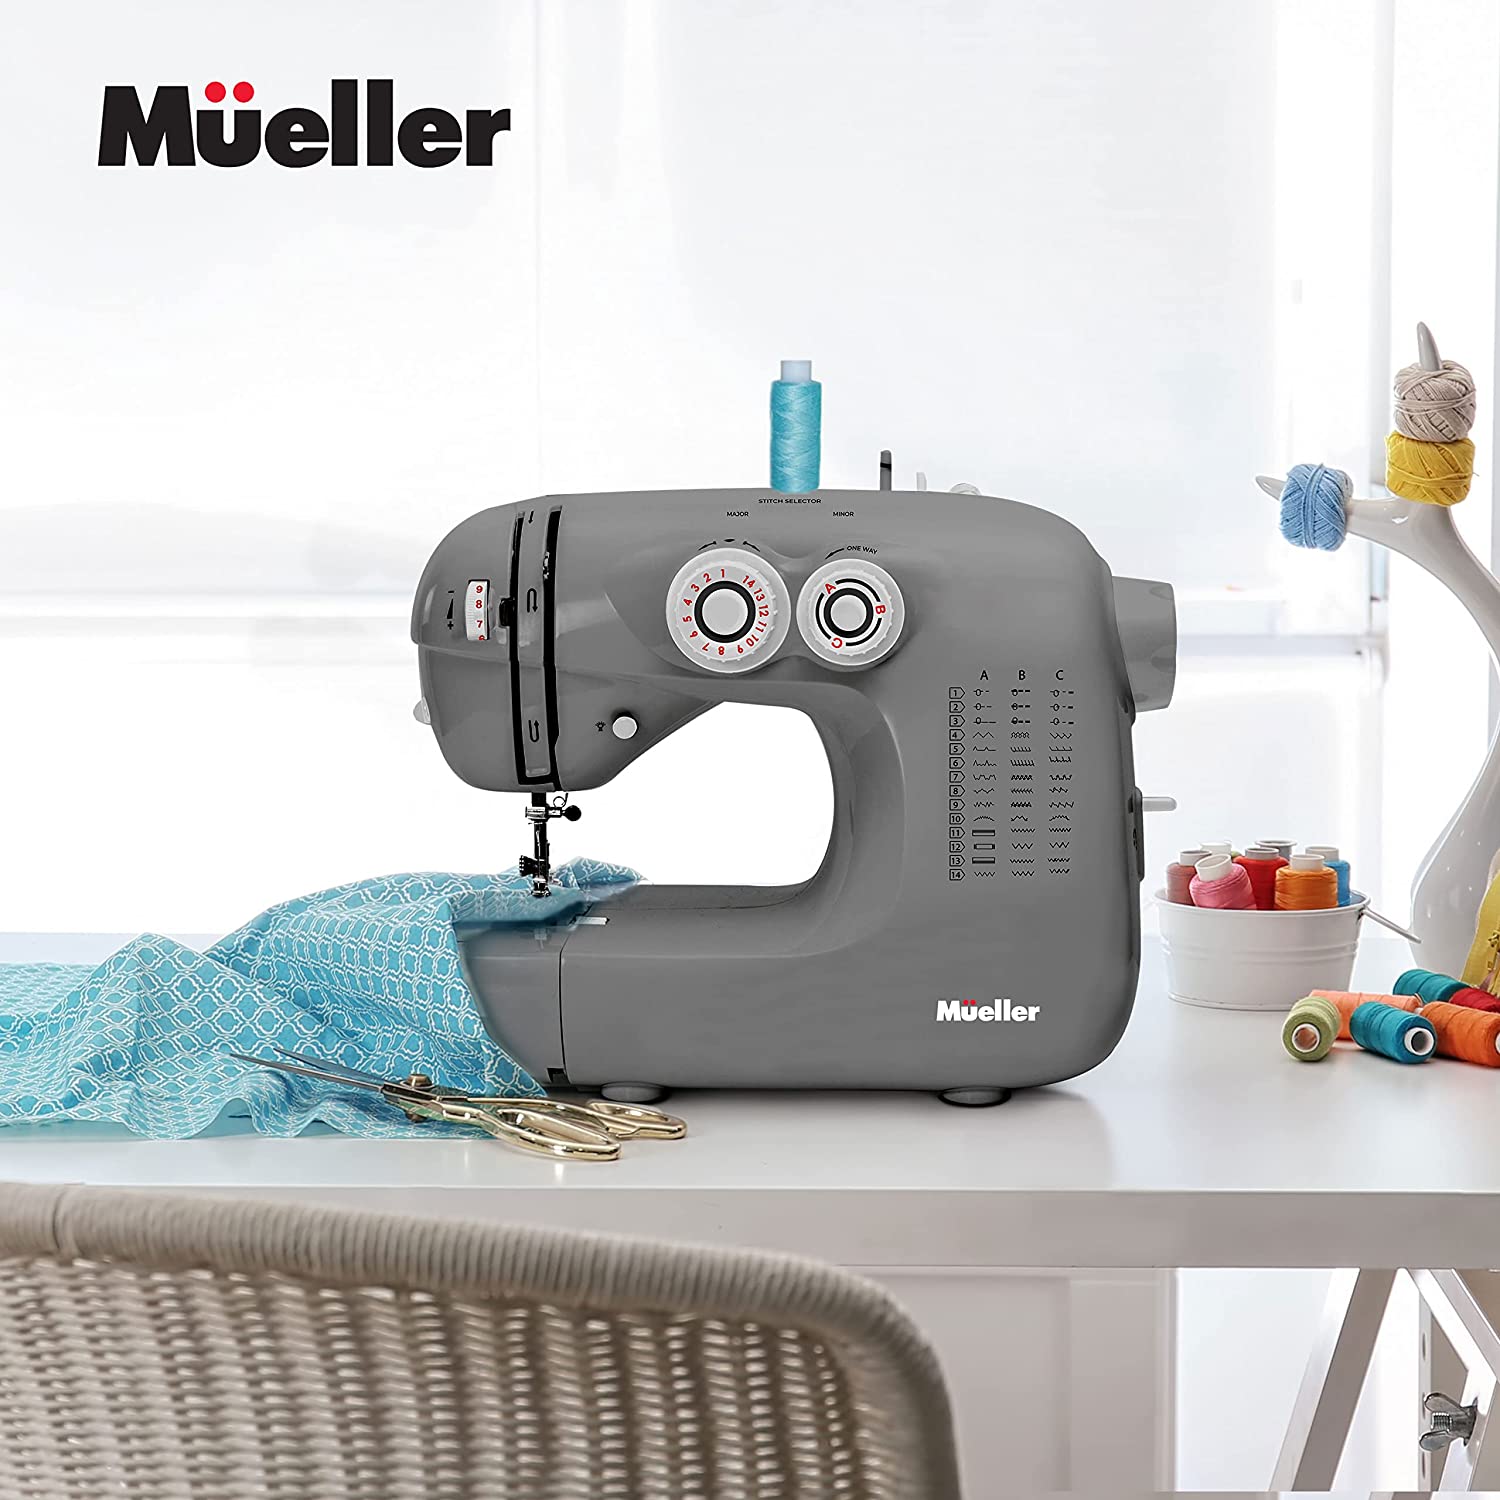 muellerhome_ultra-stitch-sewing-machine-gray-7